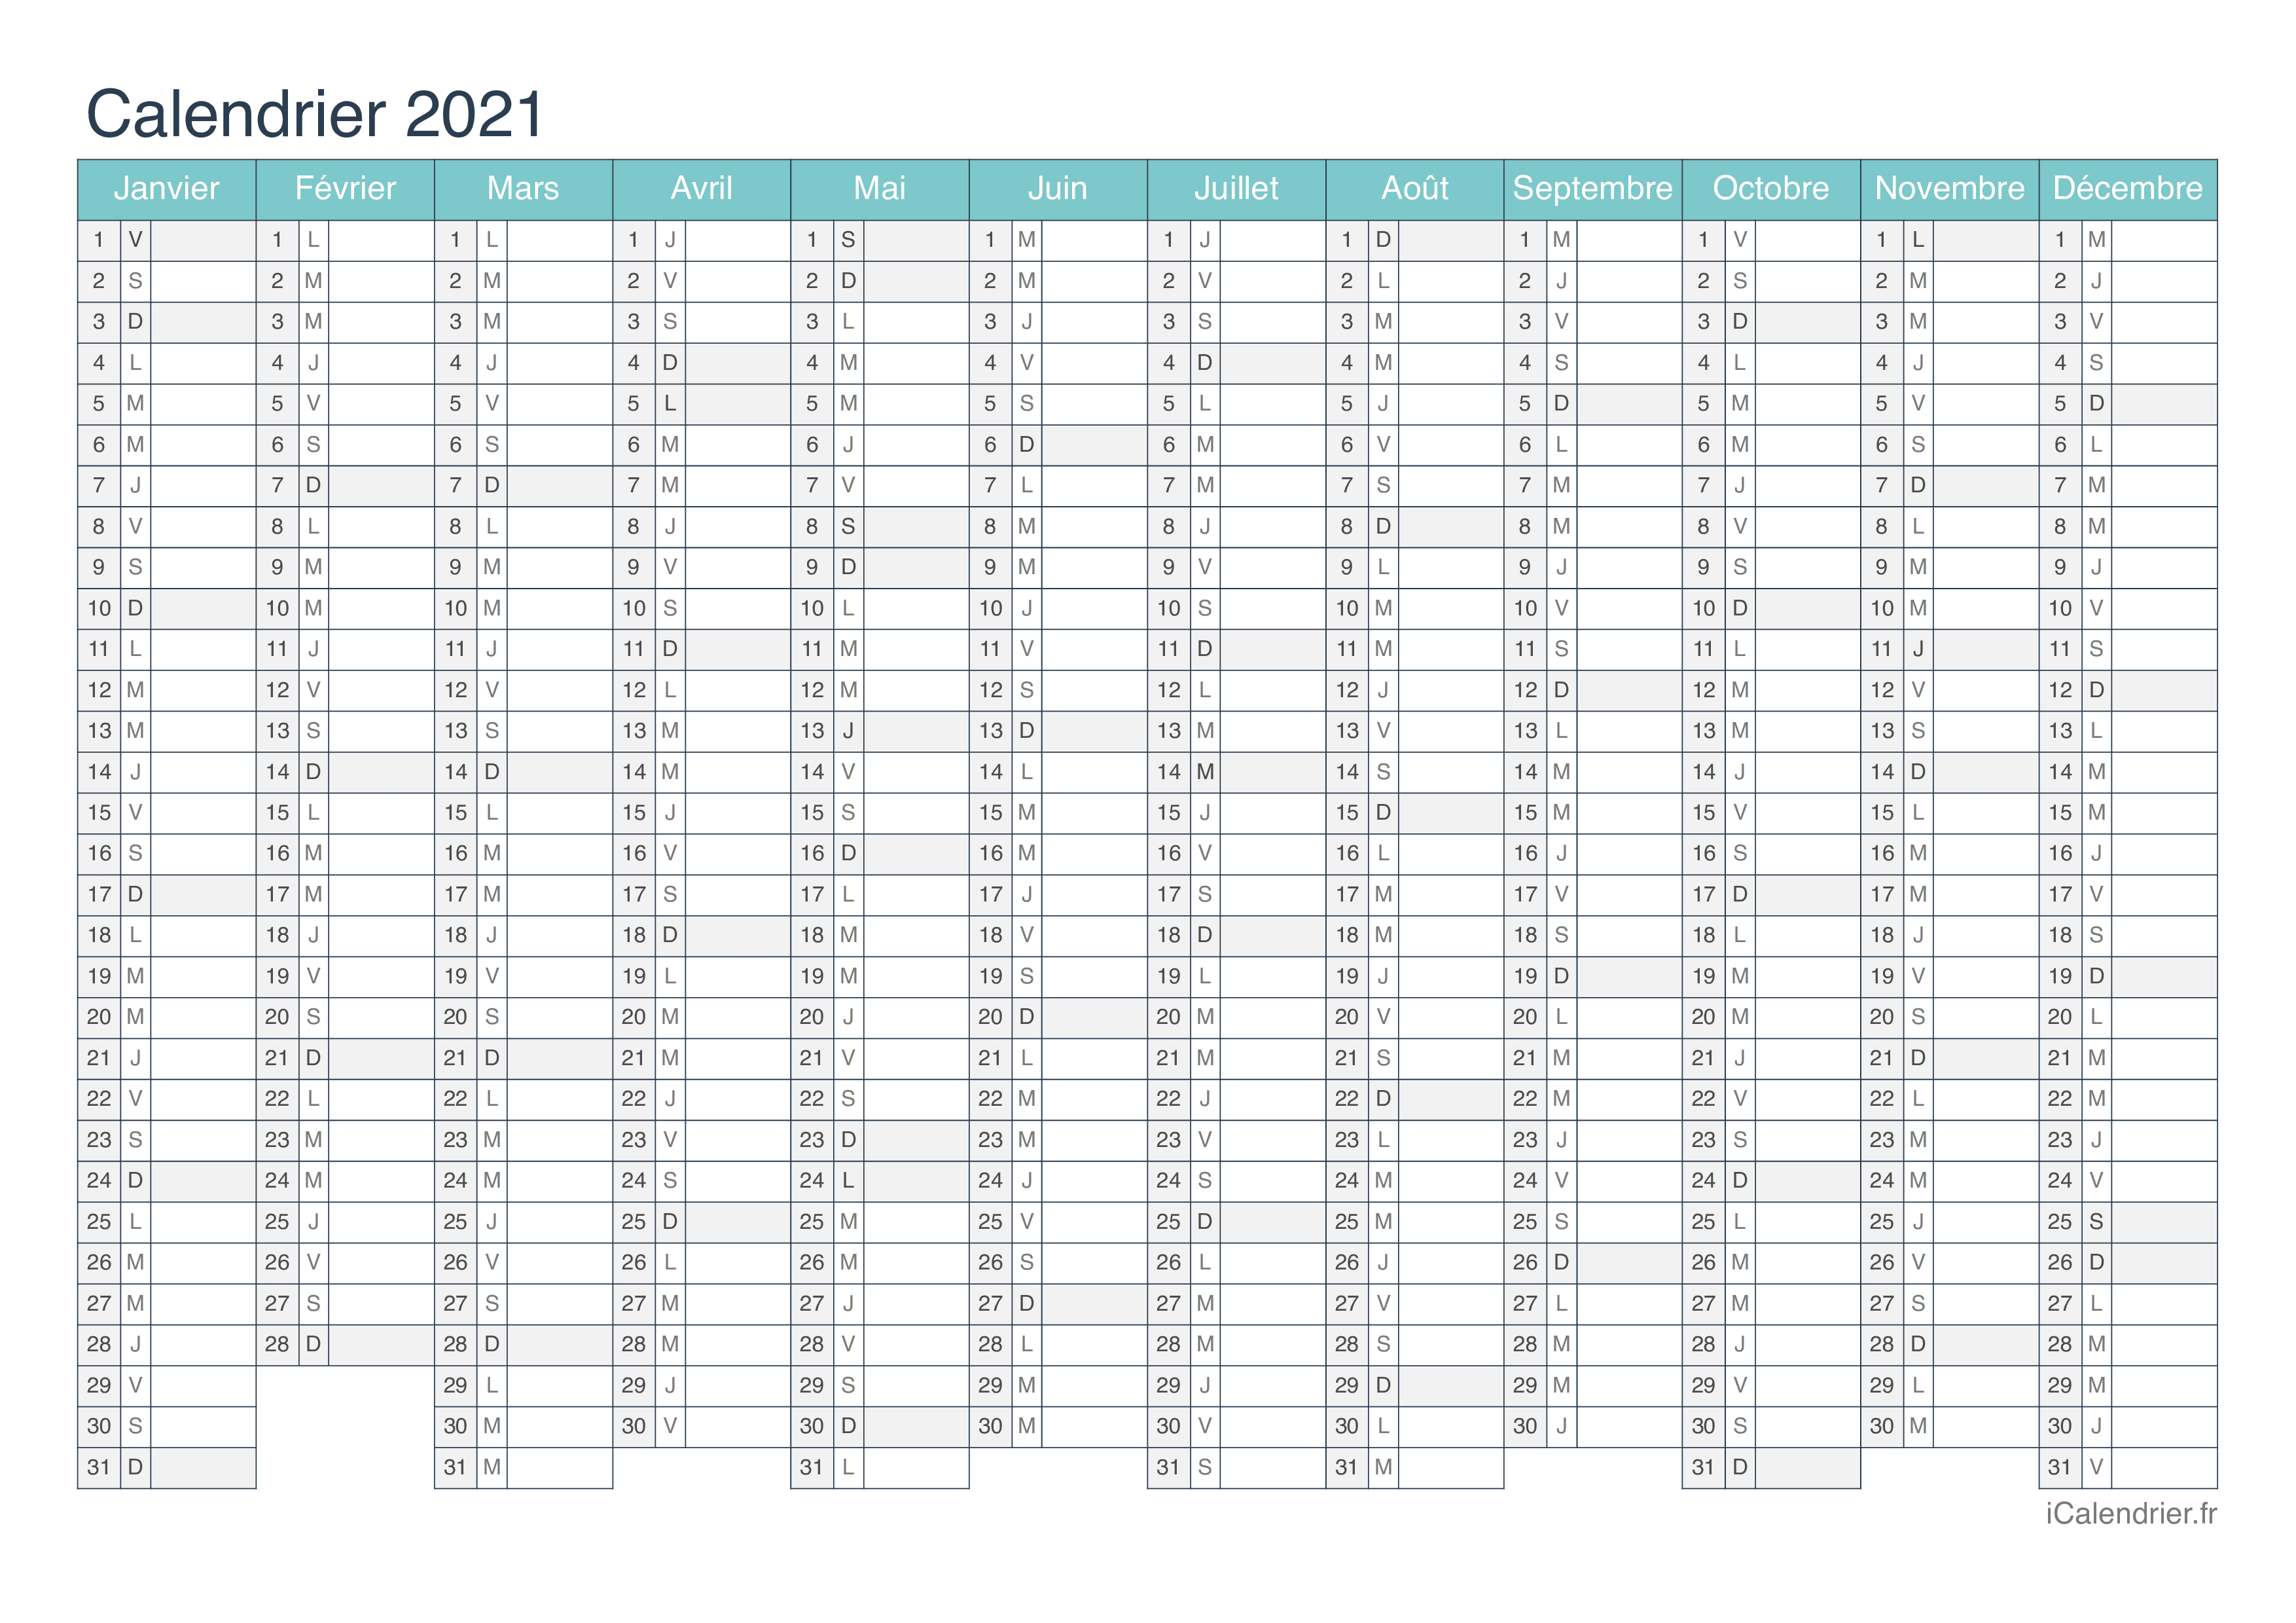 Calendrier 2021 Annuel Calendrier 2021 à imprimer PDF et Excel   iCalendrier